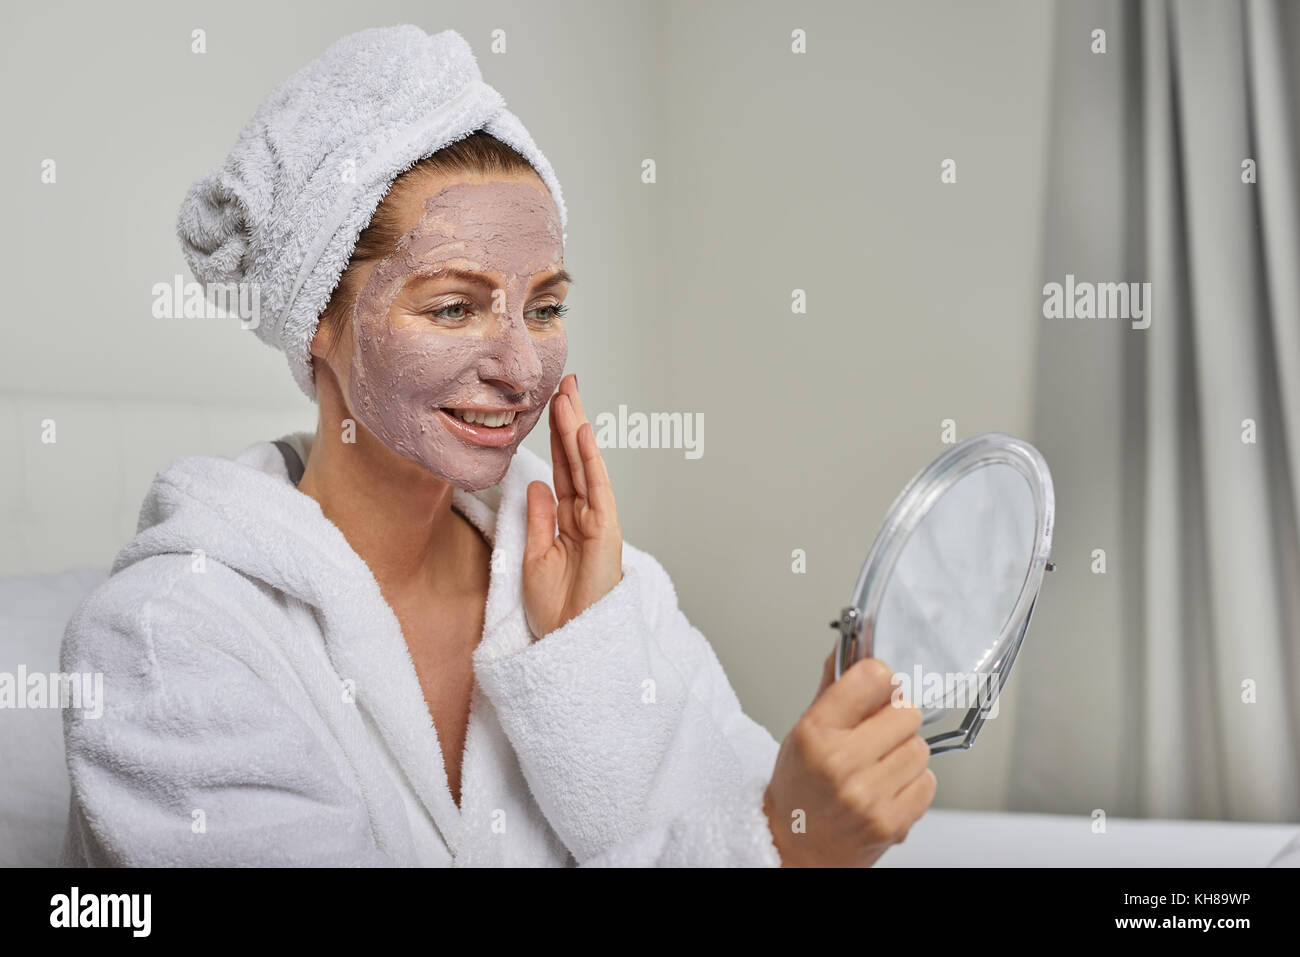 Attraktive Frau in einem weißen Bademantel Anwenden einer Maske, während in einem Handheld Spiegel zu betrachten, wie Sie sich mit einer Schönheitsbehandlung verwöhnen Stockfoto